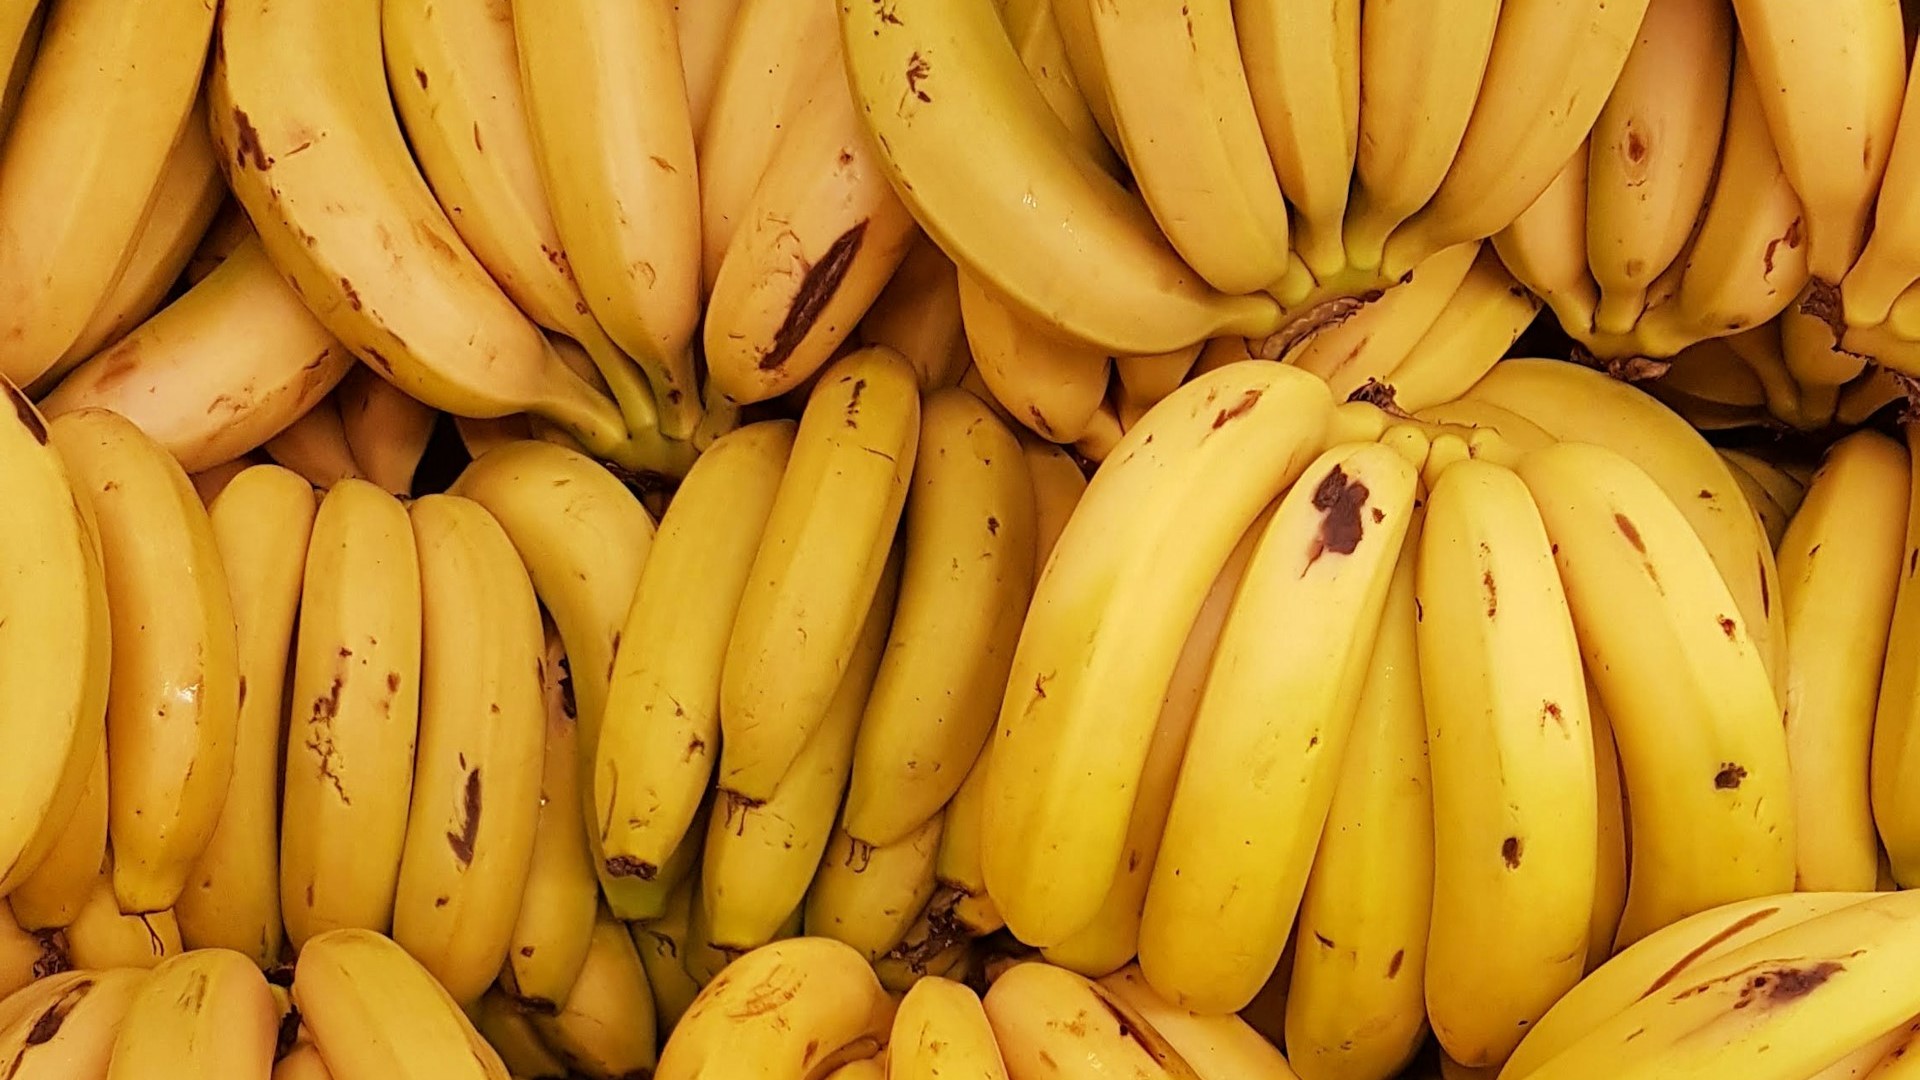 В порту Санкт-Петербурга обнаружили 60 кг кокаина в бананах